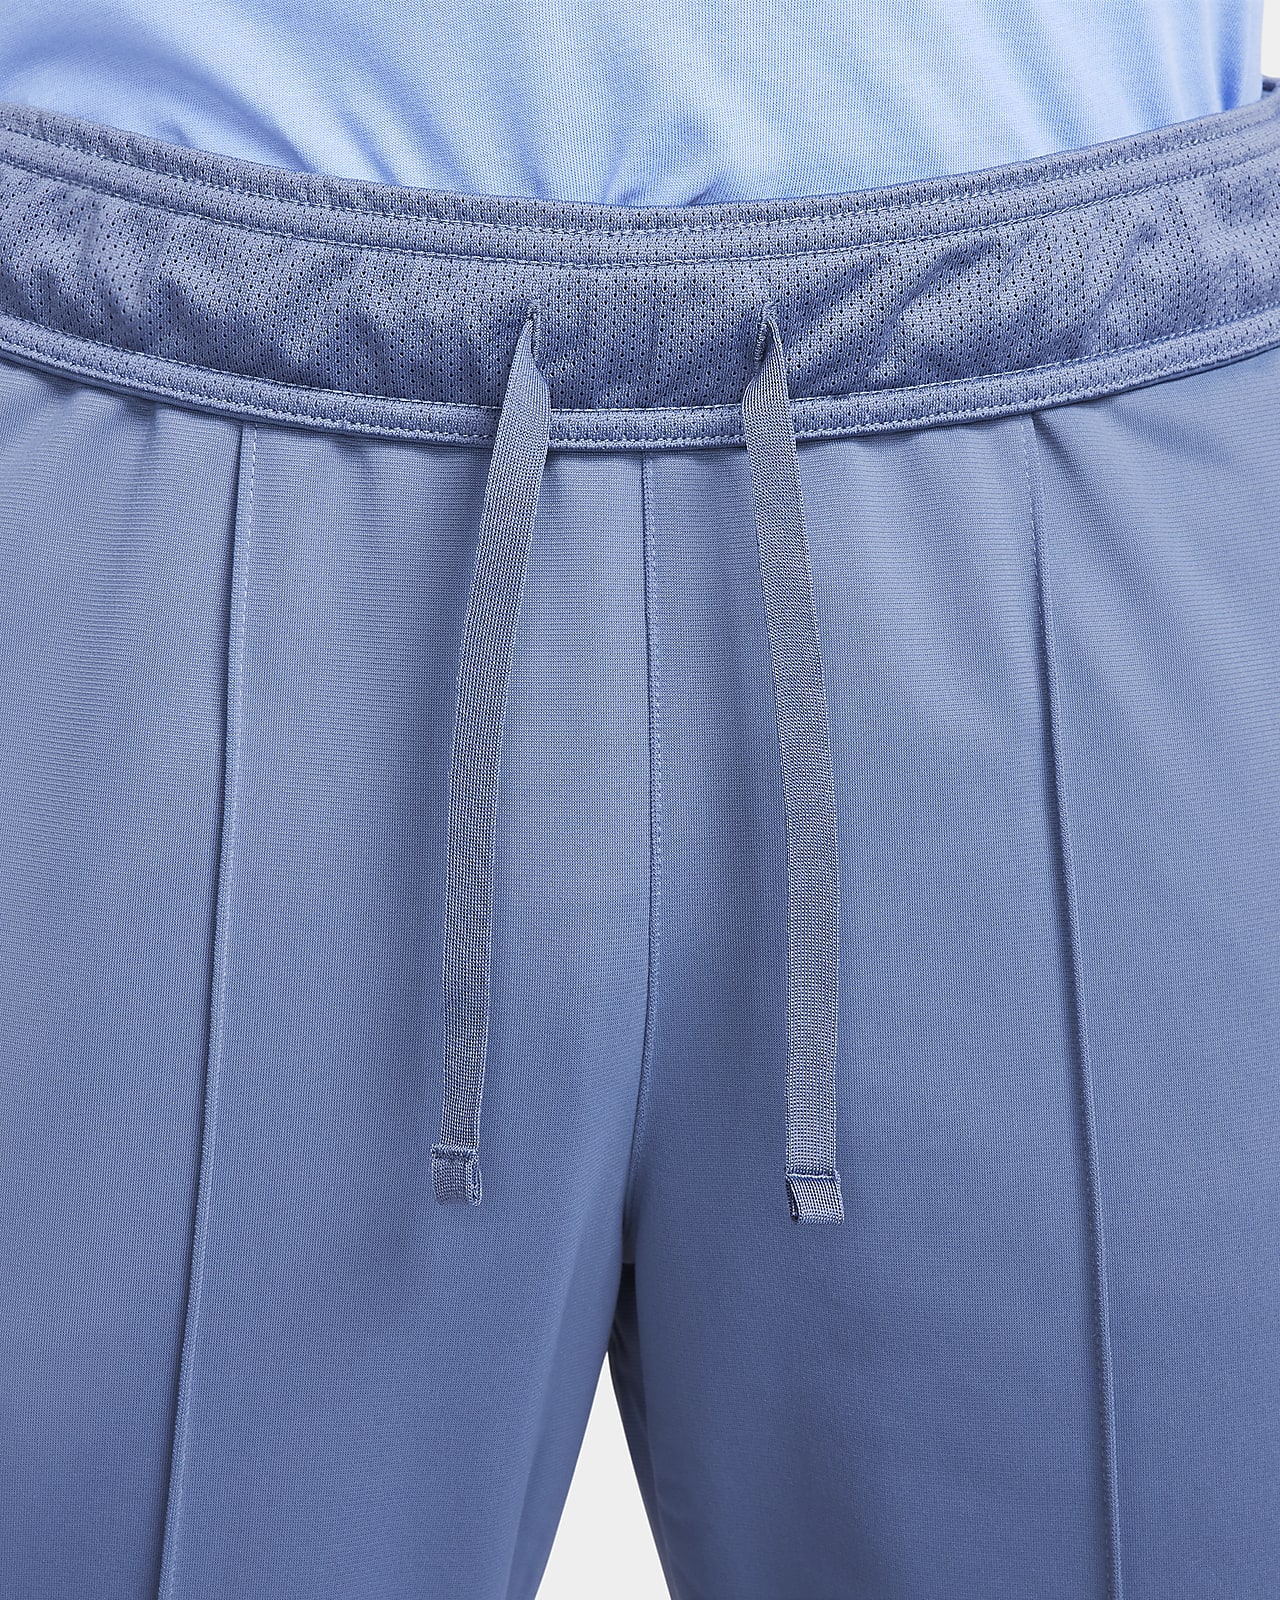 Sweatpants Nike Court Heritage Suit Pant DC0621-010